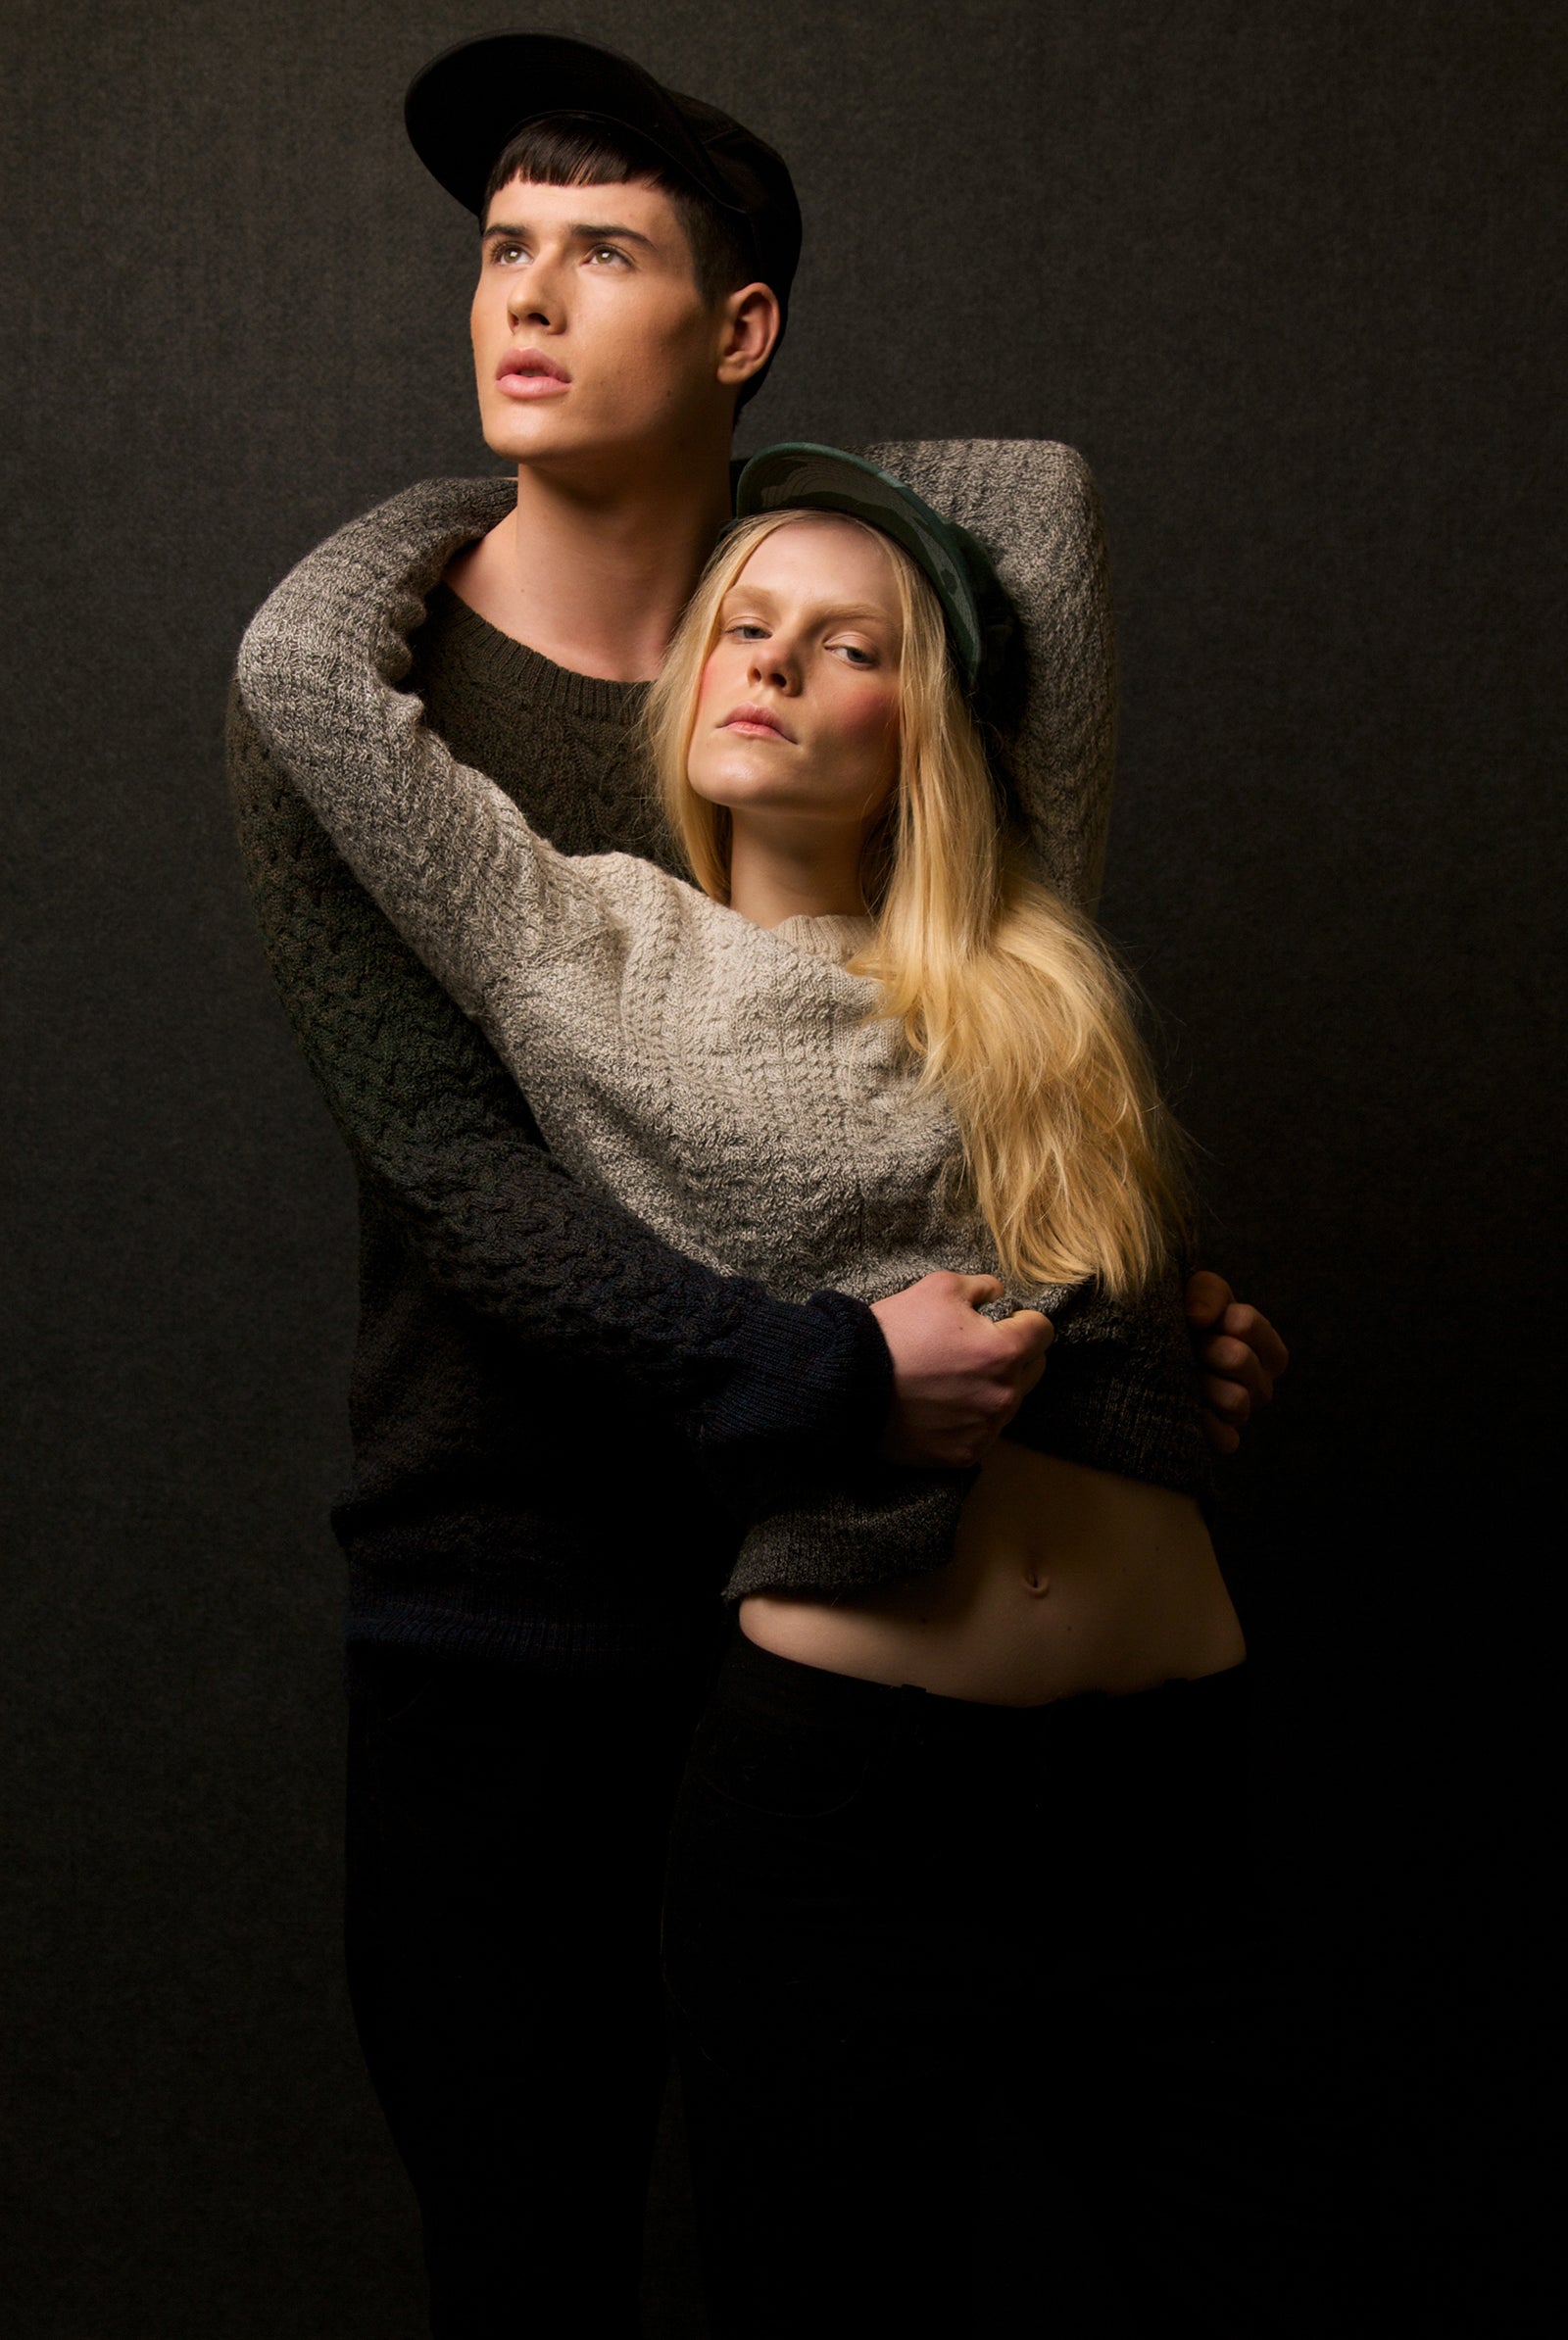 Campagne misericordia hivers 2014 couple habillé avec de la maille, collection intemporelle